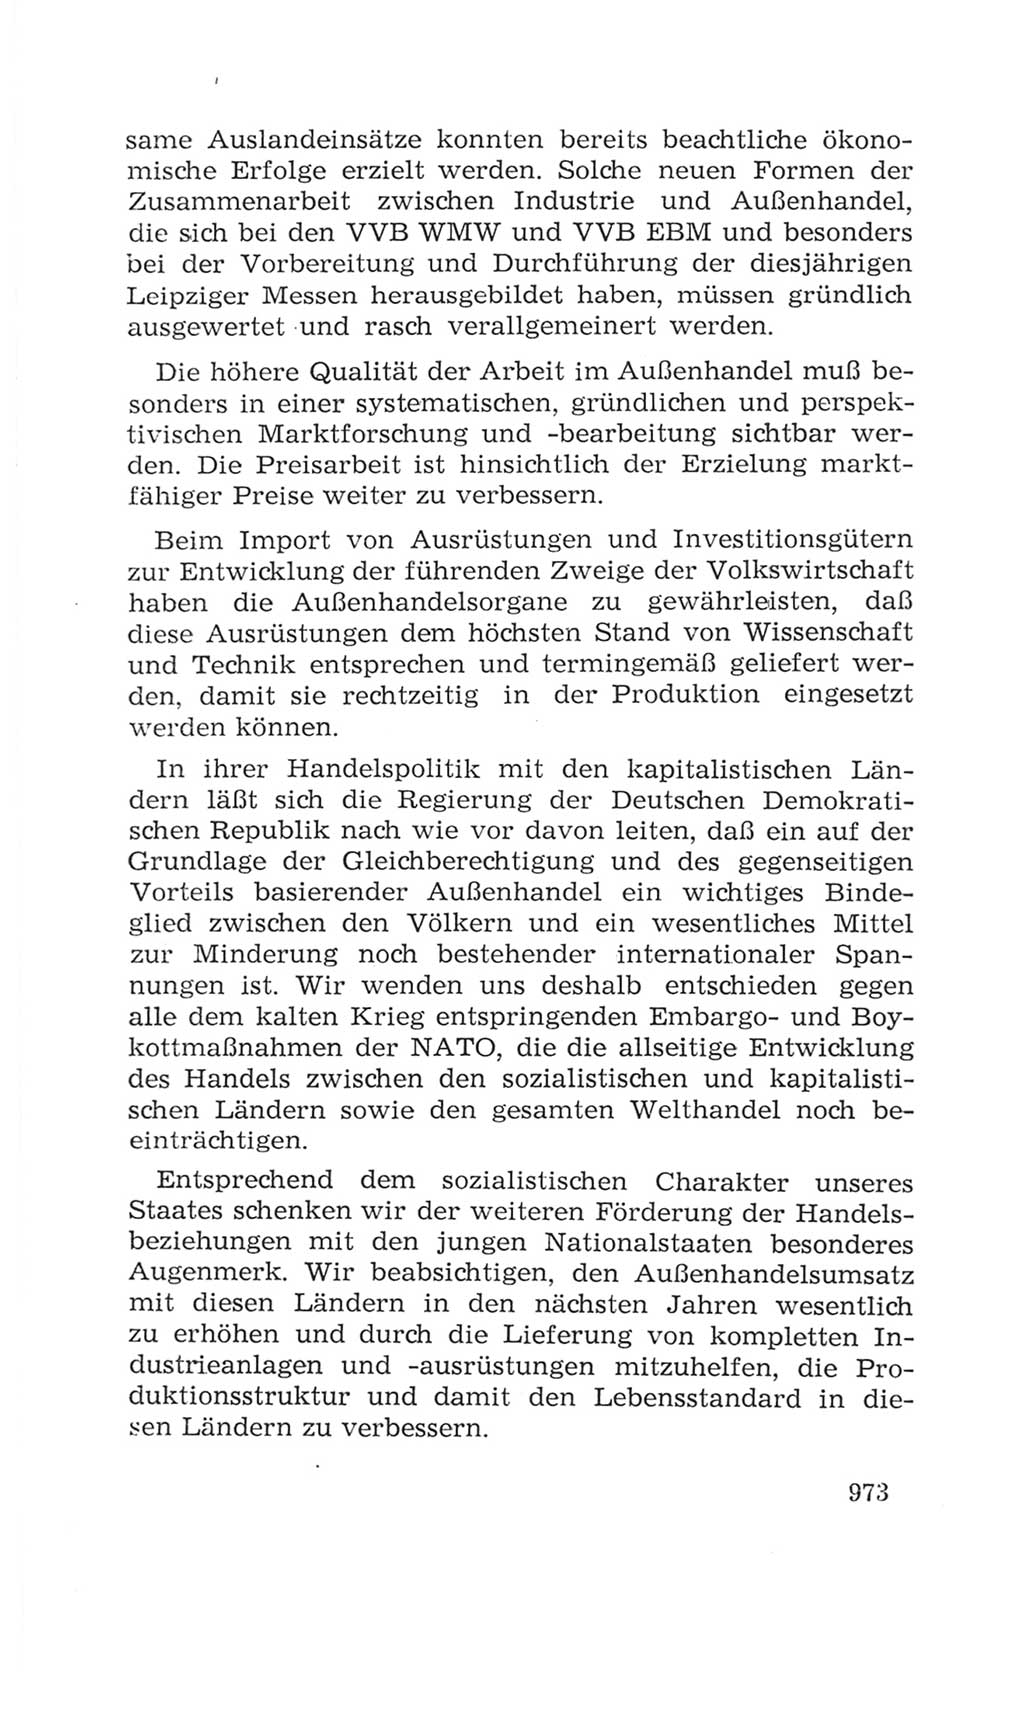 Volkskammer (VK) der Deutschen Demokratischen Republik (DDR), 4. Wahlperiode 1963-1967, Seite 973 (VK. DDR 4. WP. 1963-1967, S. 973)